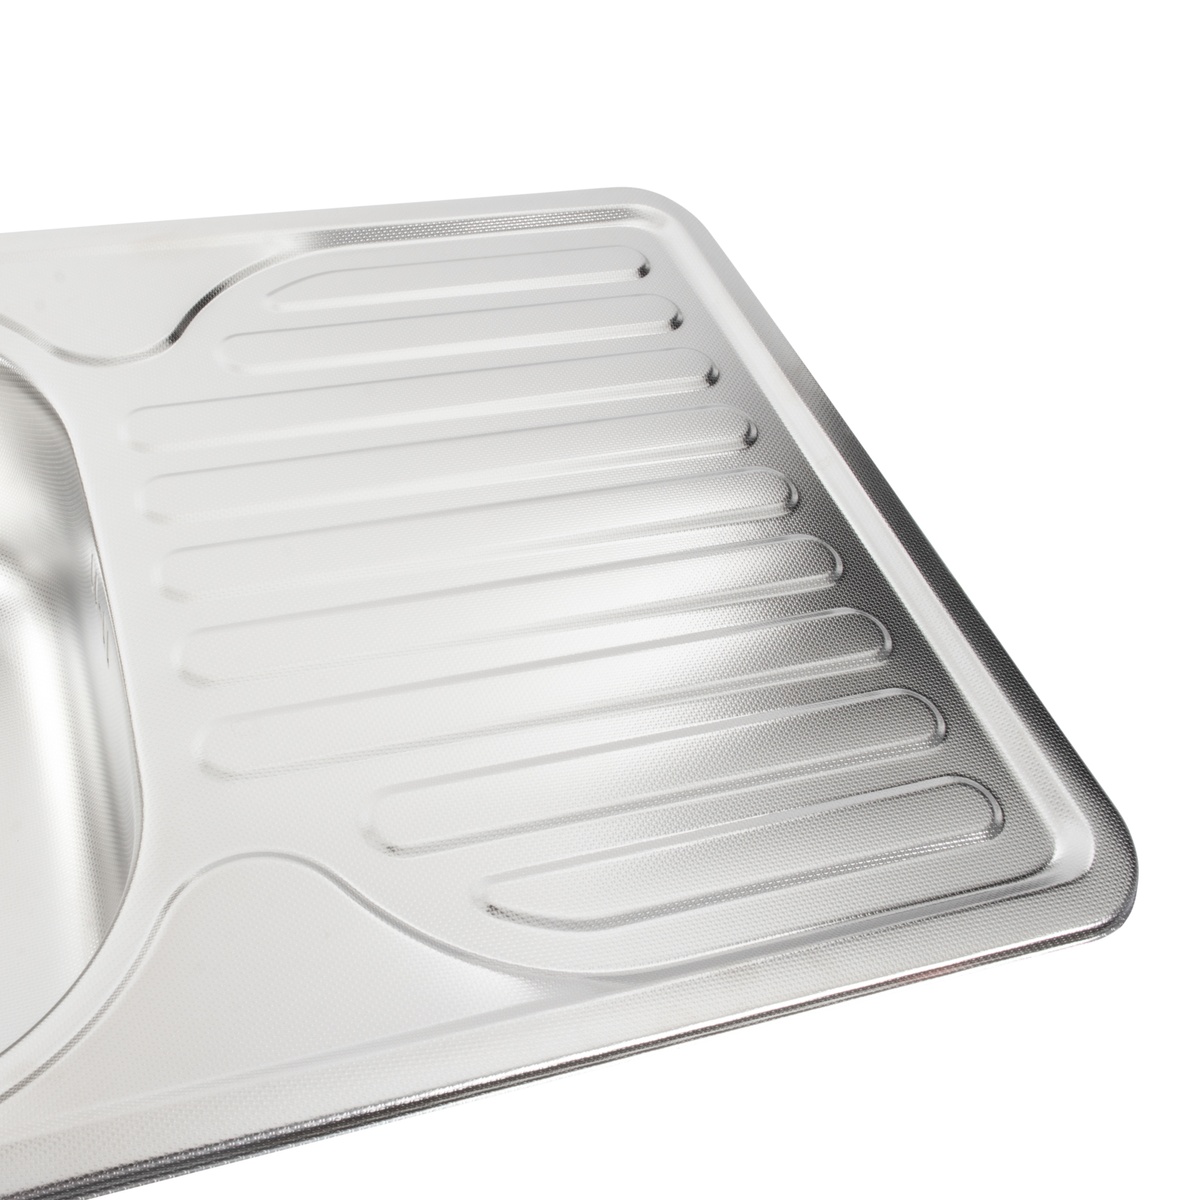 Мийка для кухні із нержавіючої сталі прямокутна PLATINUM 7642 750x490x180мм мікротекстура 0.8мм із сифоном PLS-A466